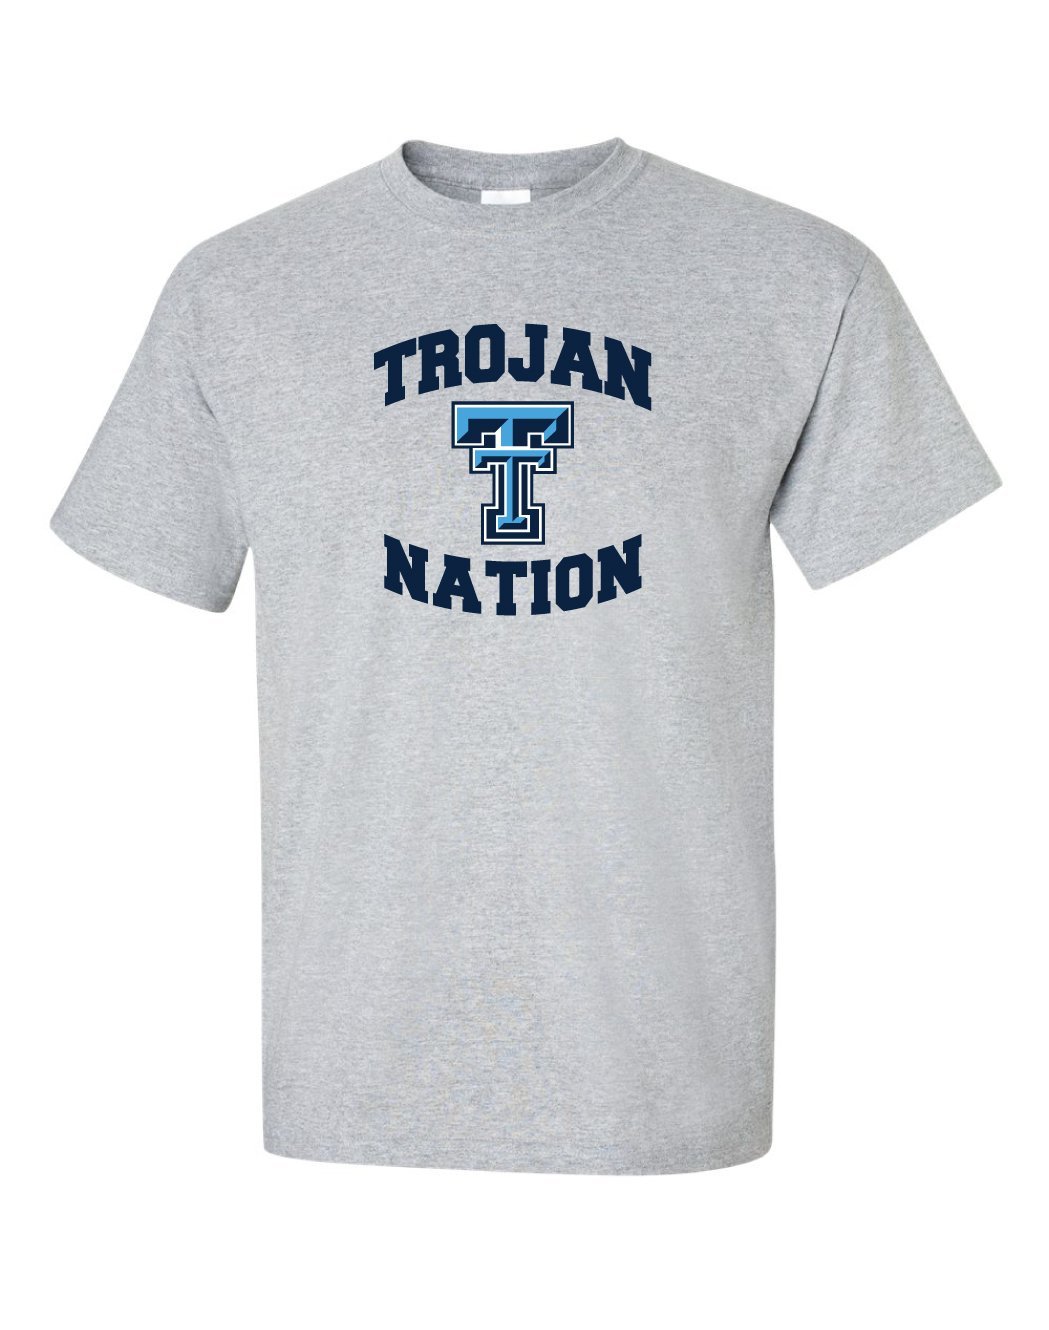 Triopia Trojans - Trojan Nation Tshirt